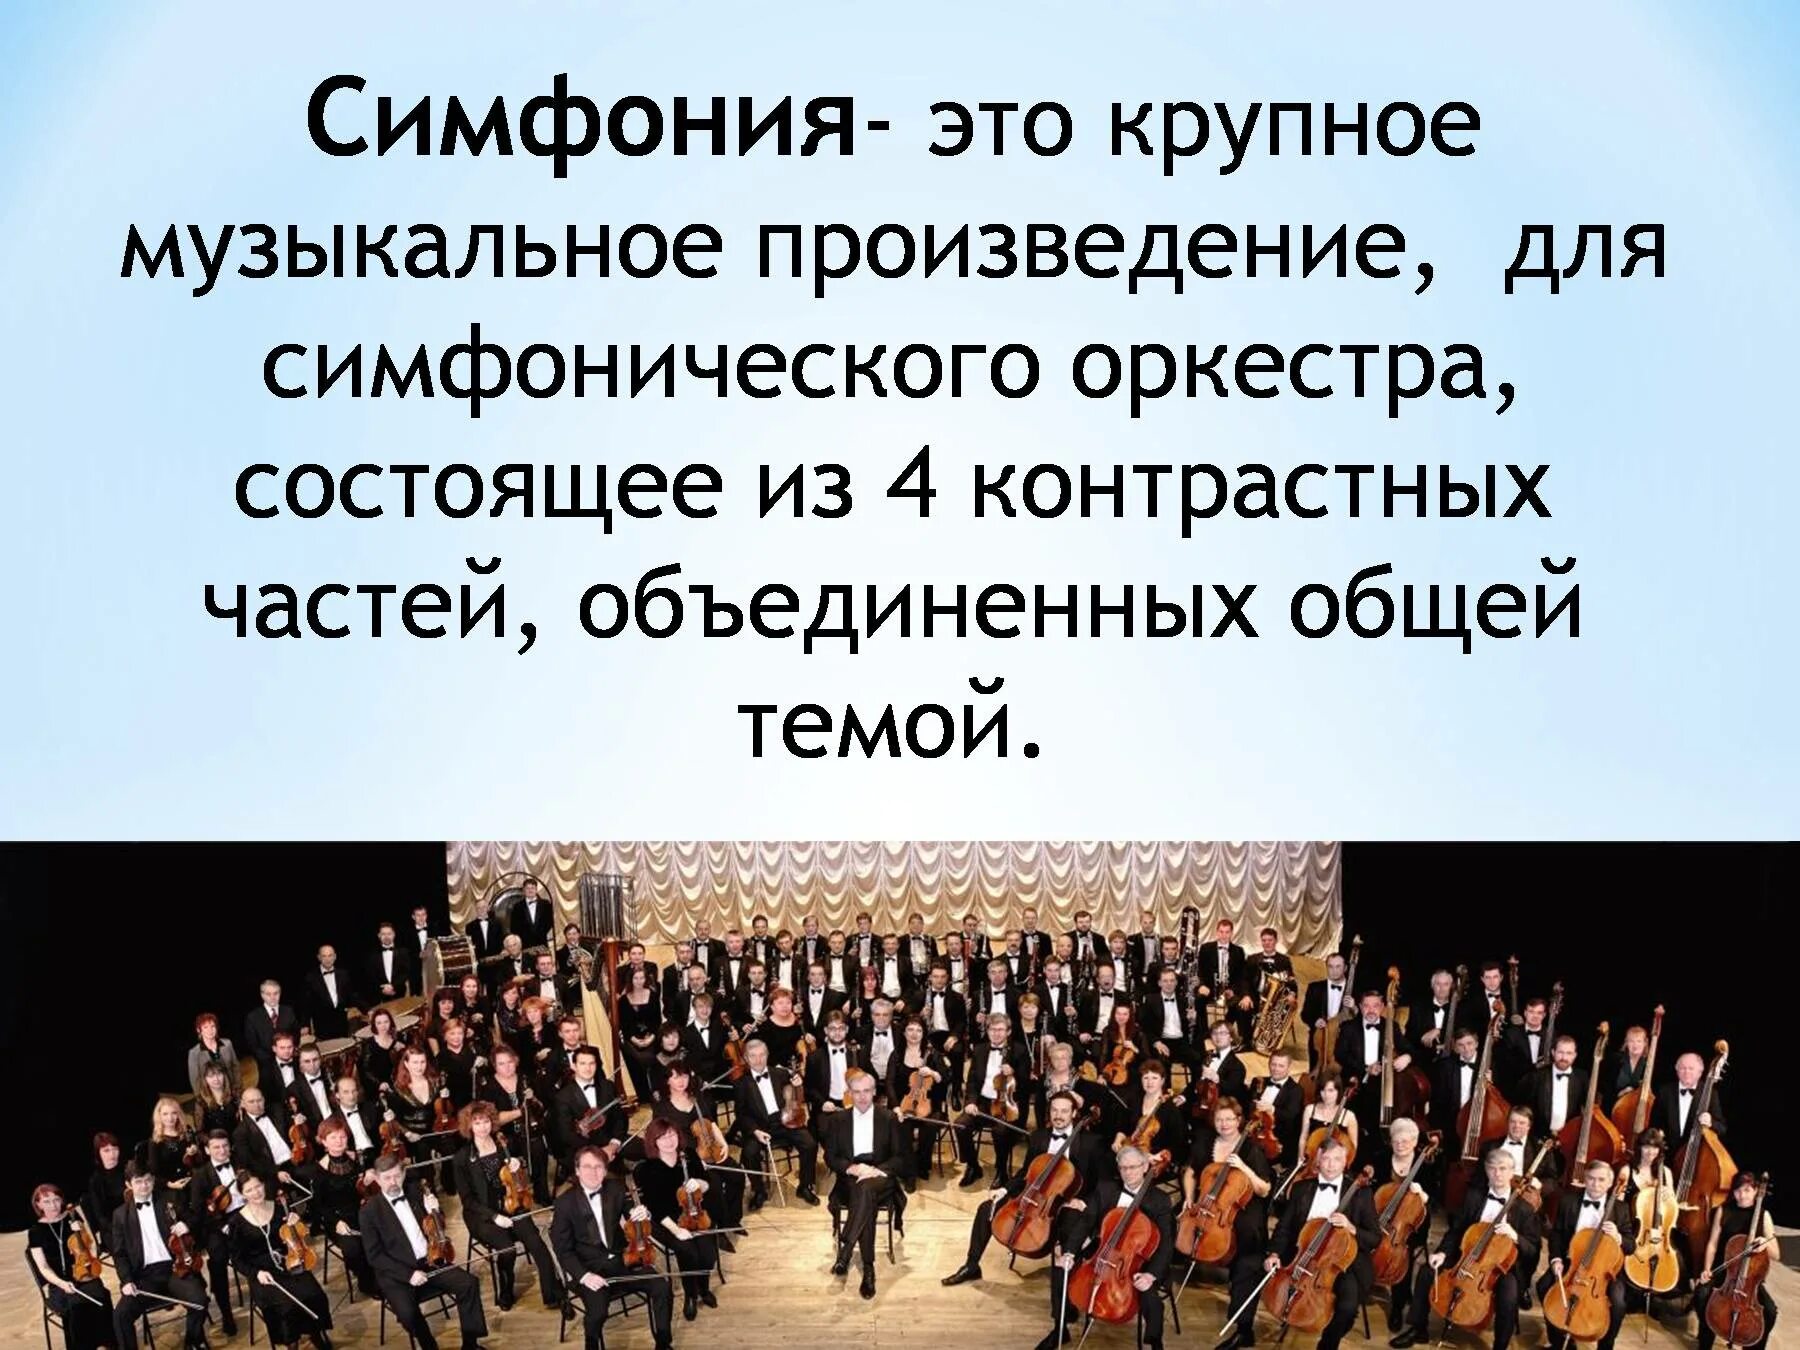 Определить произведение по музыке. Симфония. Произведения для симфонического оркестра. Симфония-это музыкальное произведение. Музыкальное произведение для симфонического оркестра.